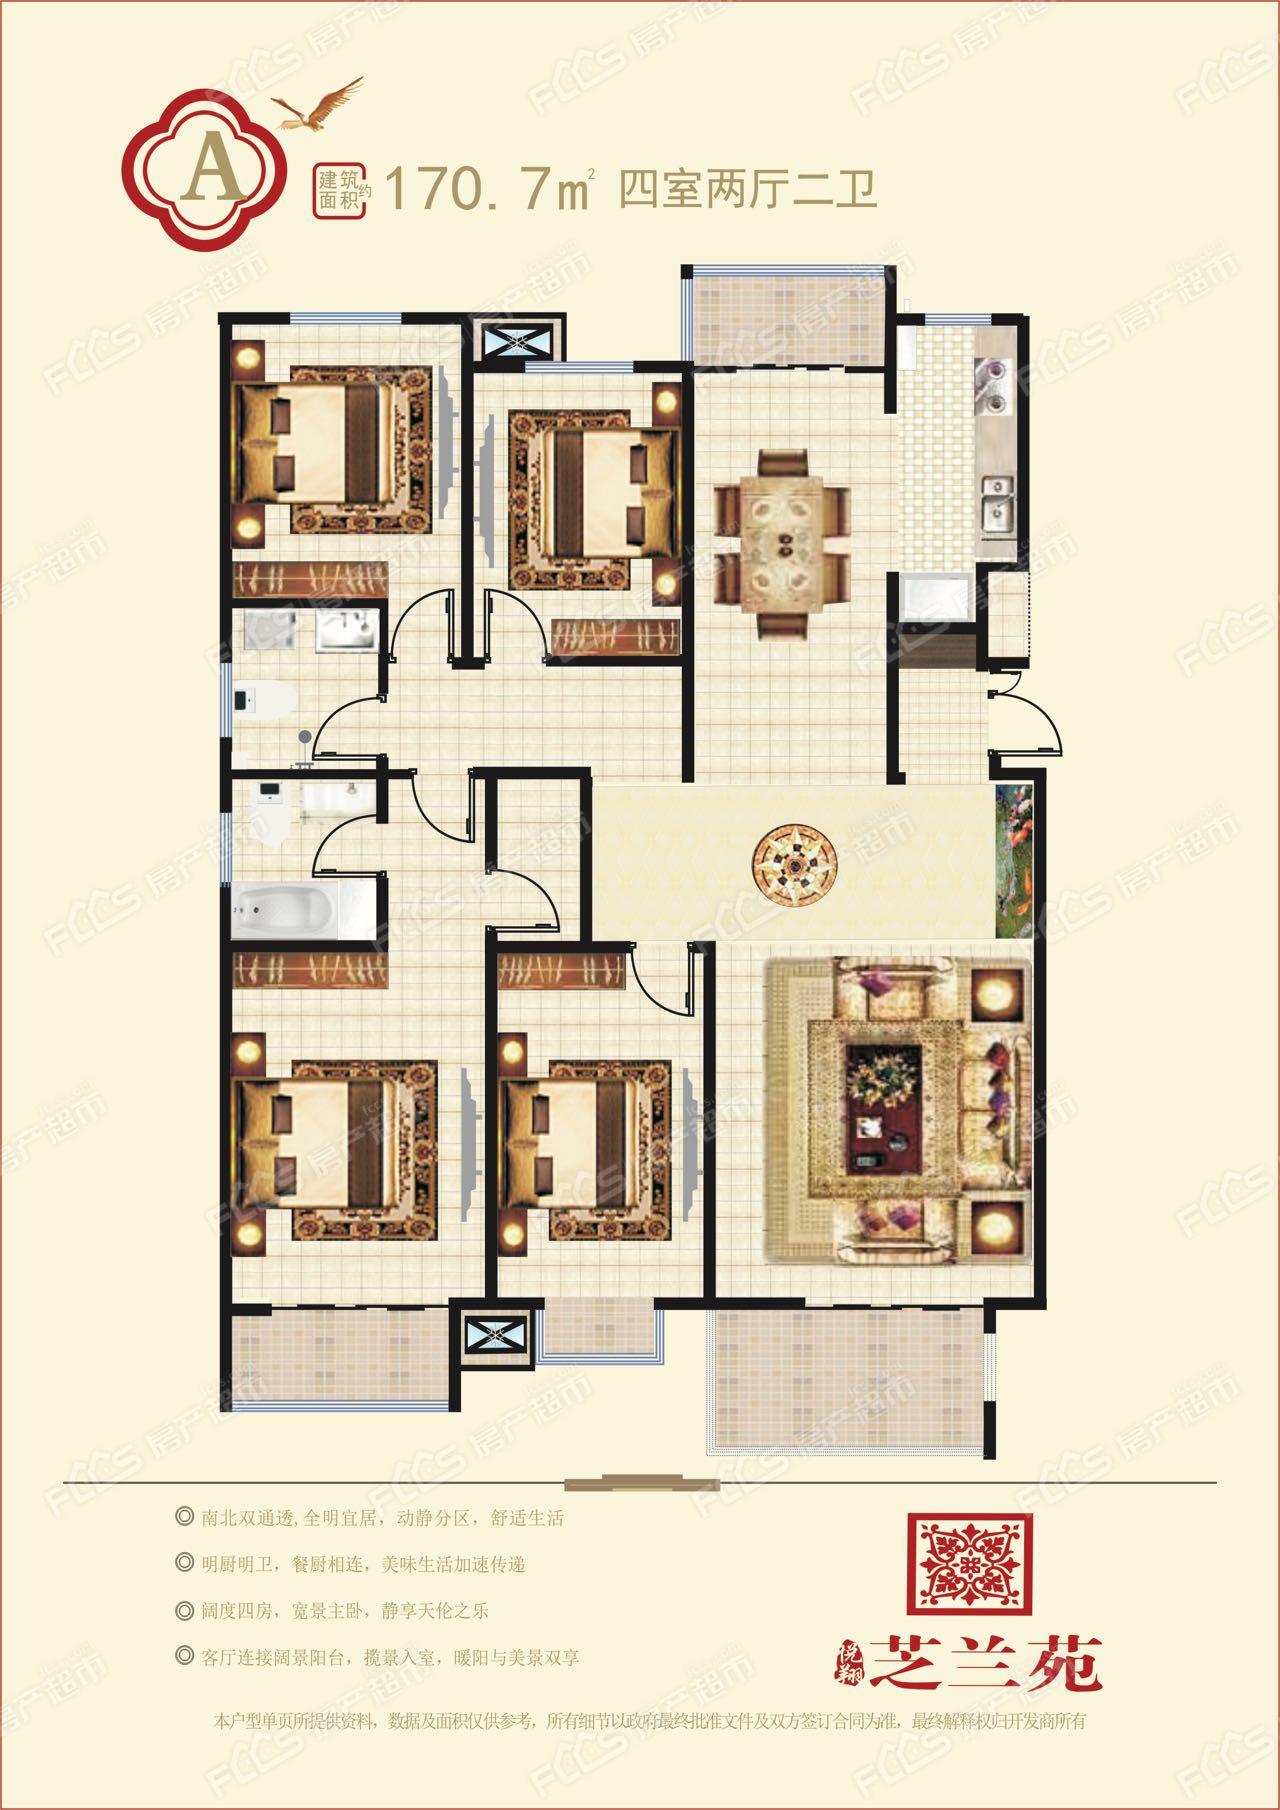 悦翔·芝兰苑洋房户型图170.7平米四室两厅两卫